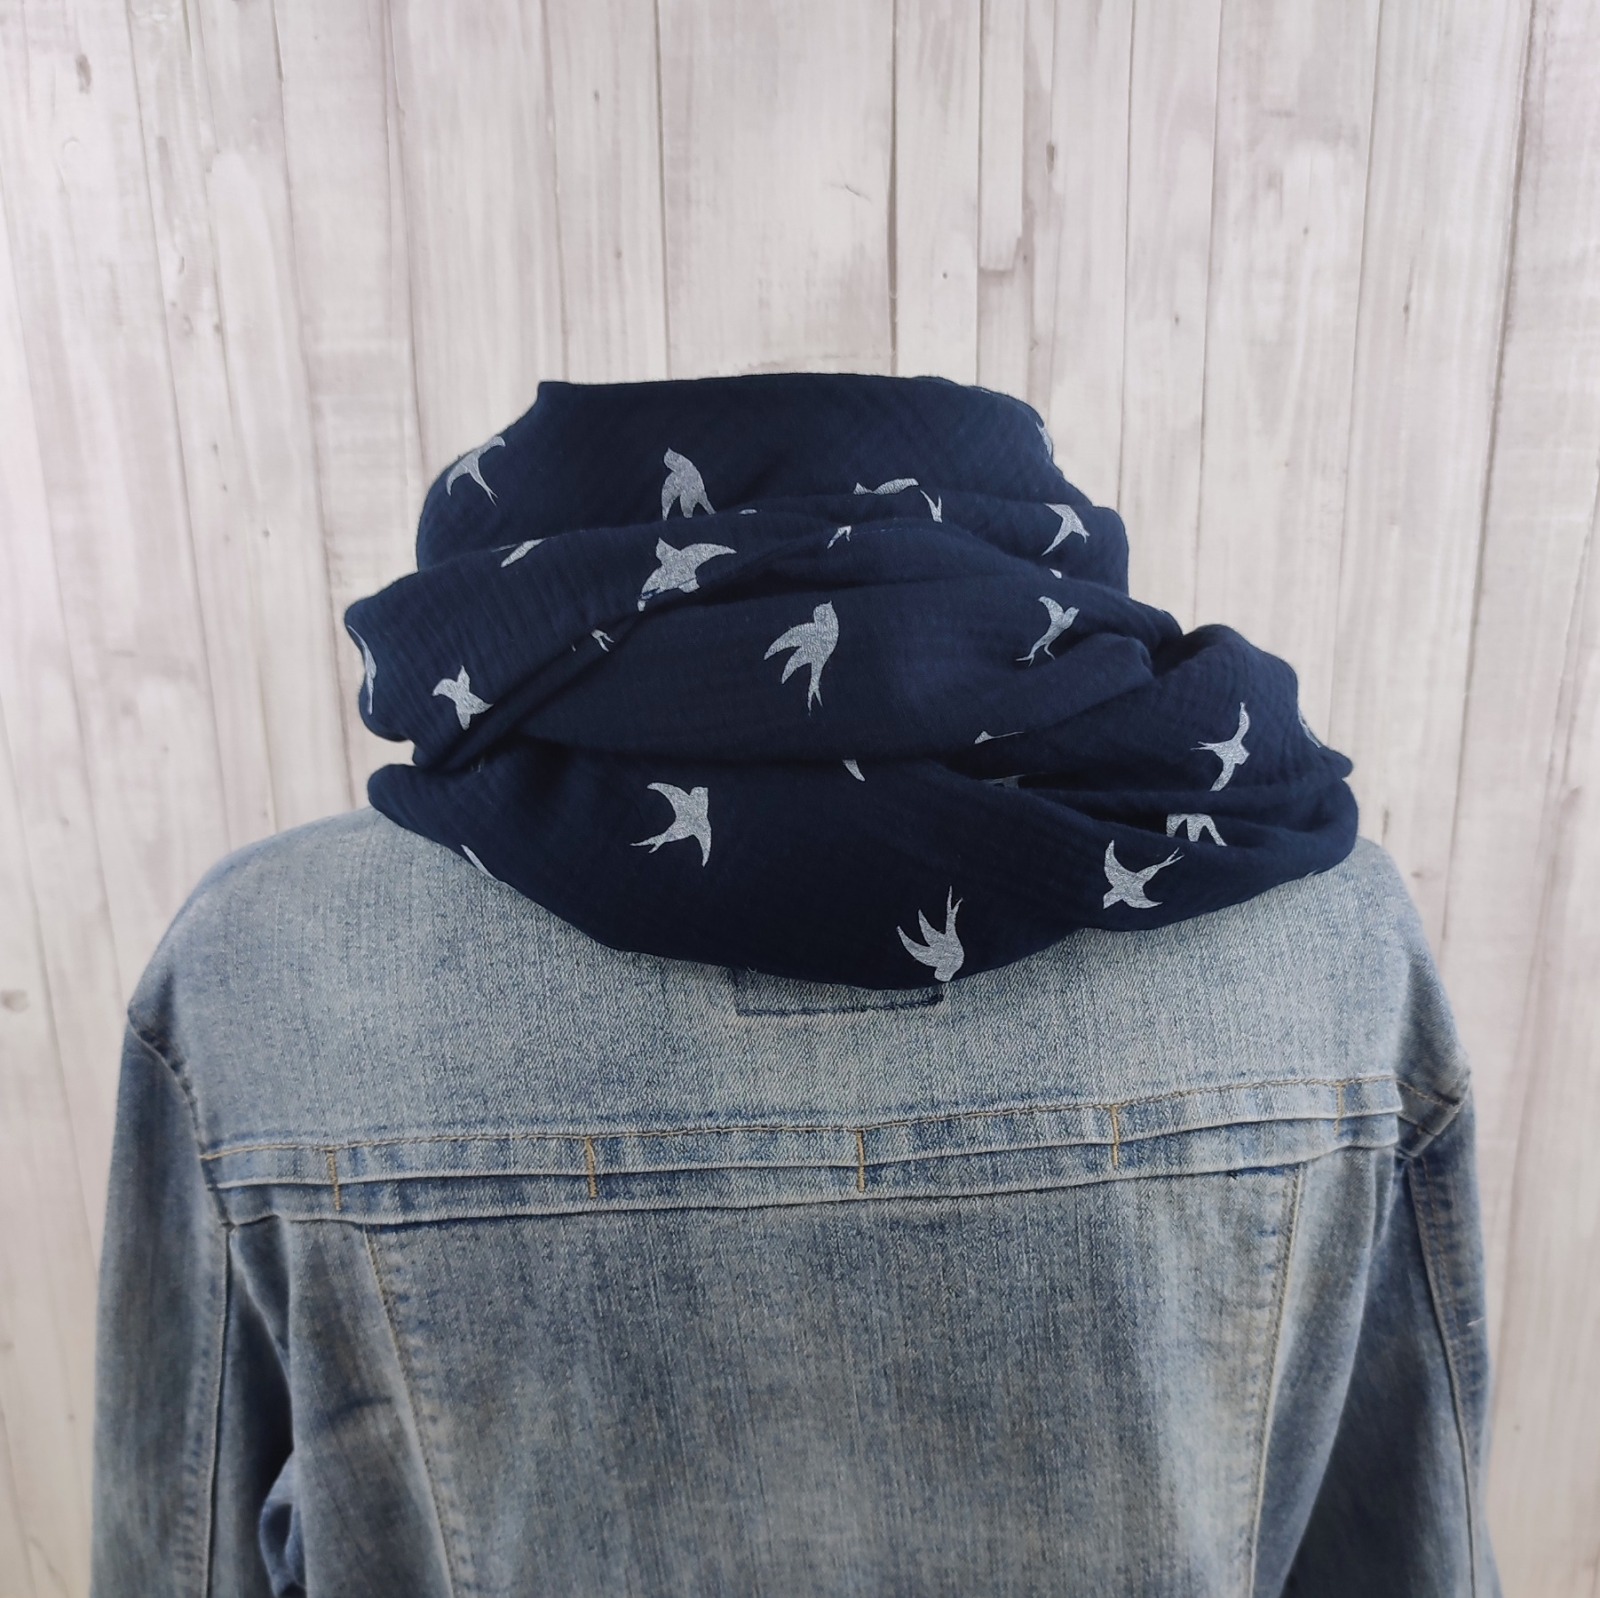 Tuch Dreieckstuch Musselin marineblau - gemustert mit weißen Schwalben - XXL Tuch aus Baumwolle